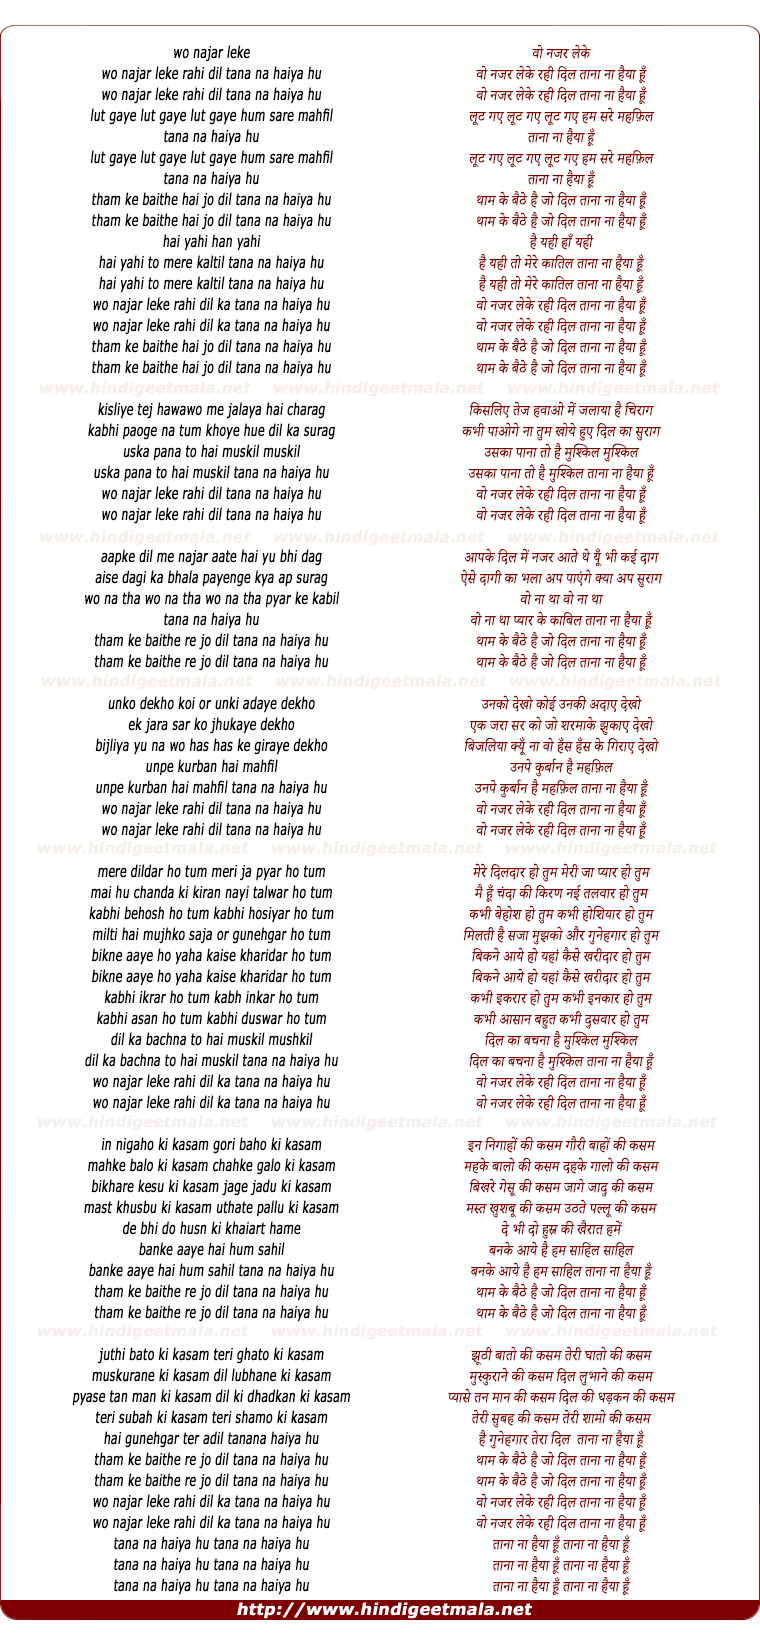 lyrics of song Woh Nazar Leke Rahi Dil